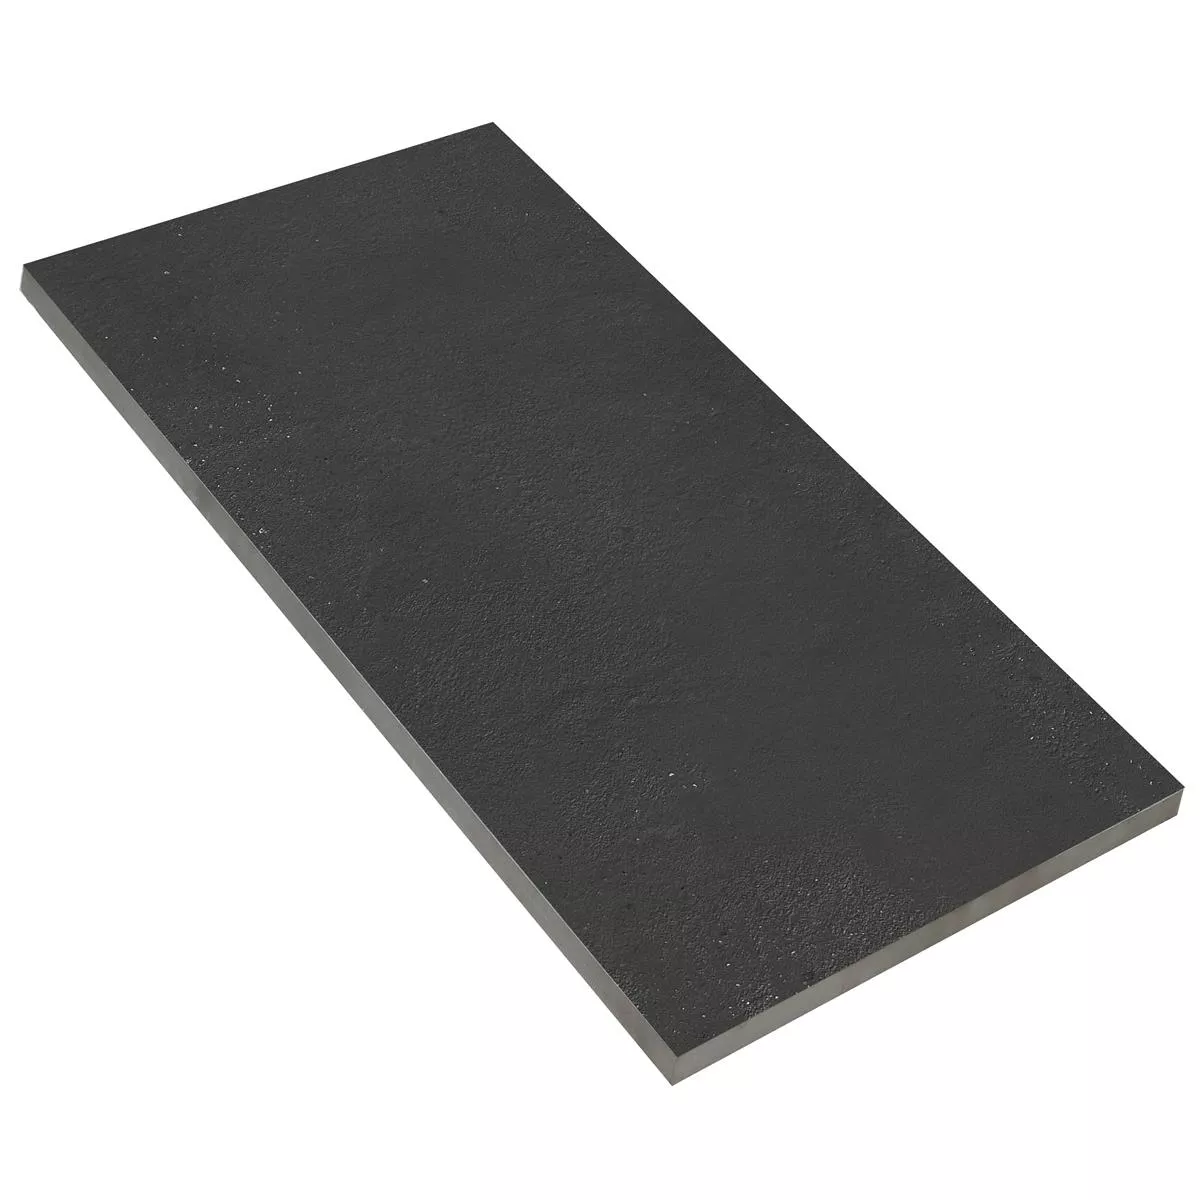 Πλακάκι Δαπέδου Malibu Συγκεκριμένη Εμφάνιση Ανθρακίτης 60x120cm